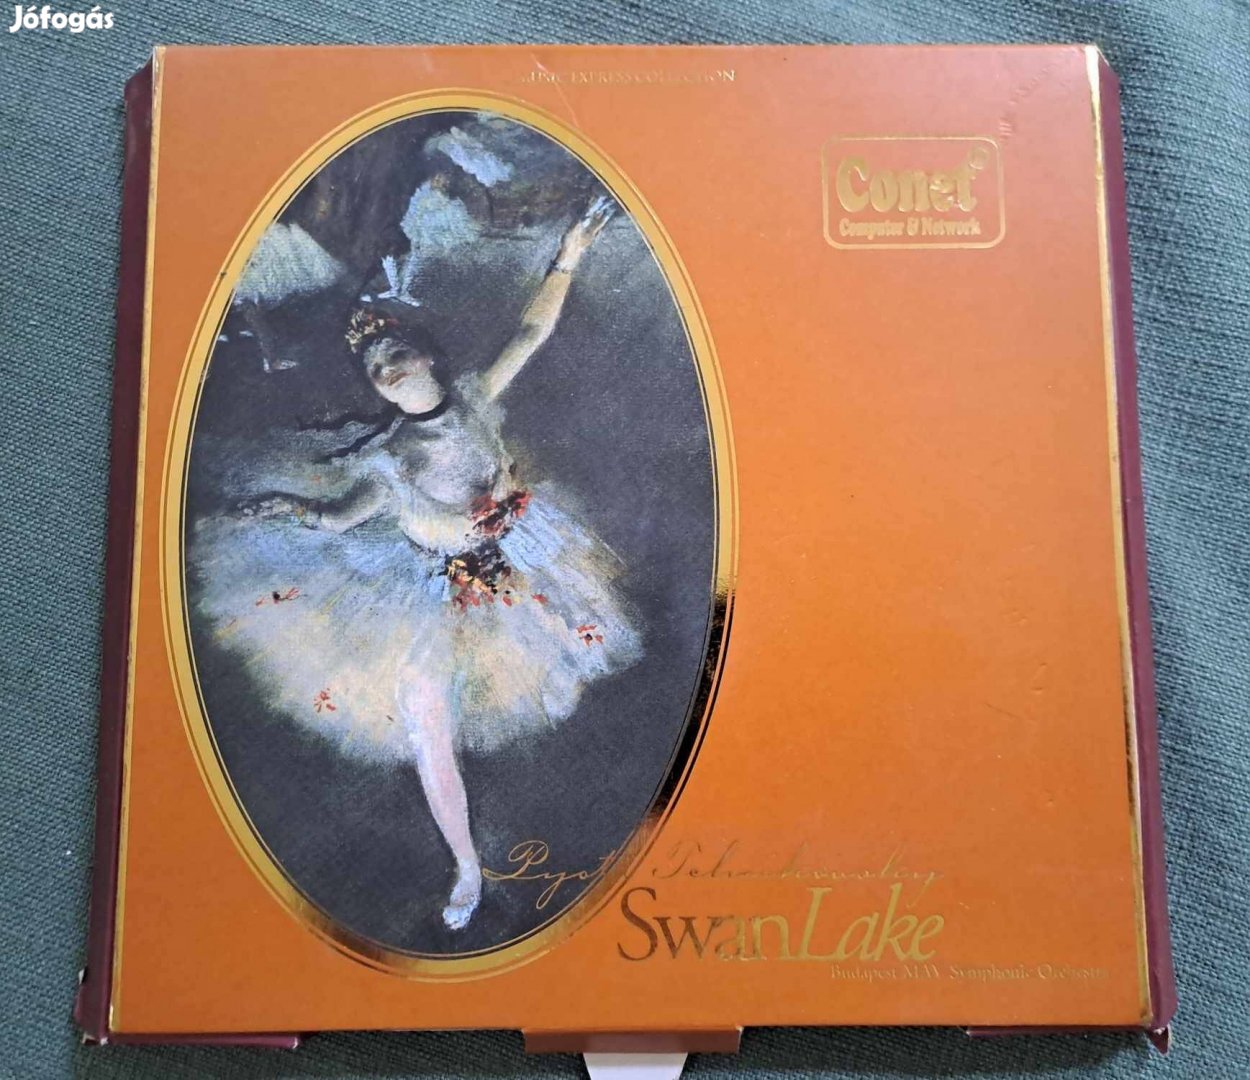 Csajkovszkij - Swan Lake CD